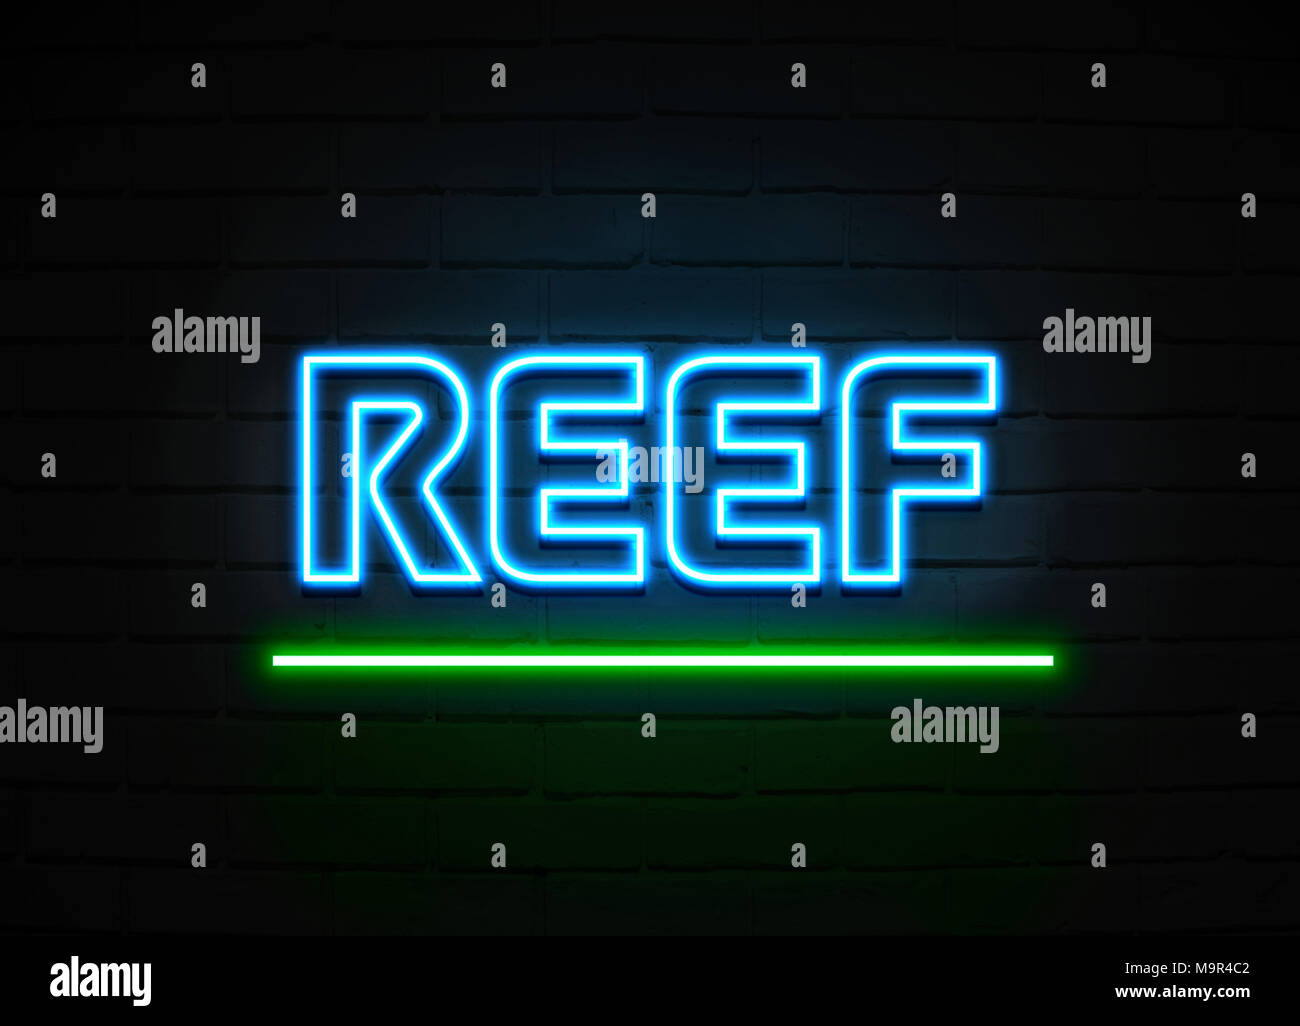 Reef Leuchtreklame - glühende Leuchtreklame auf brickwall Wand - 3D-Royalty Free Stock Illustration dargestellt. Stockfoto